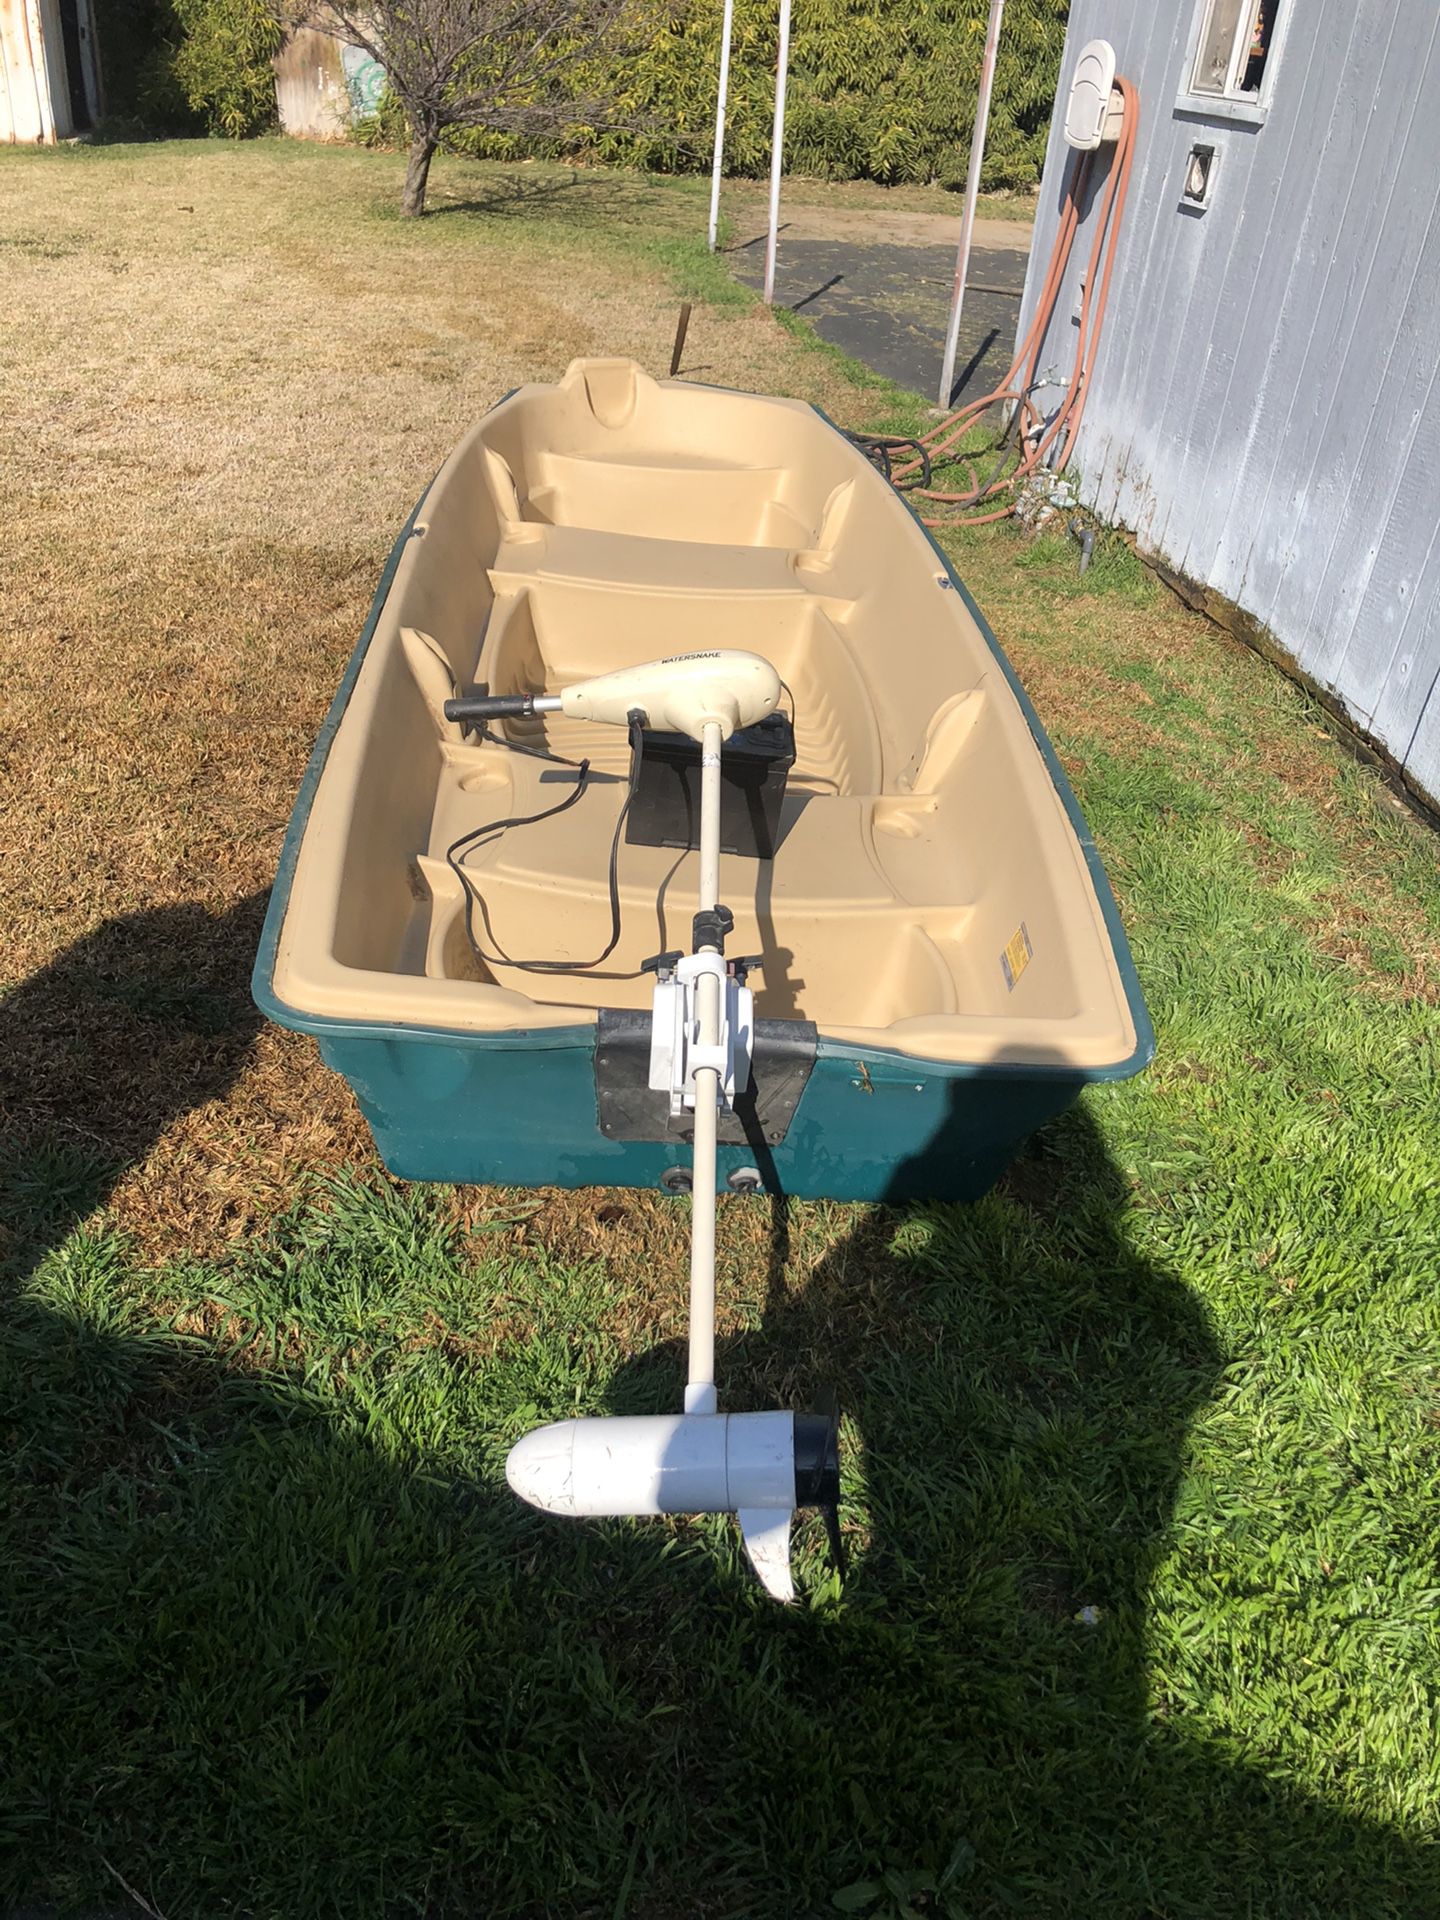 12 ft Jon Boat for sale, $600 OBO.